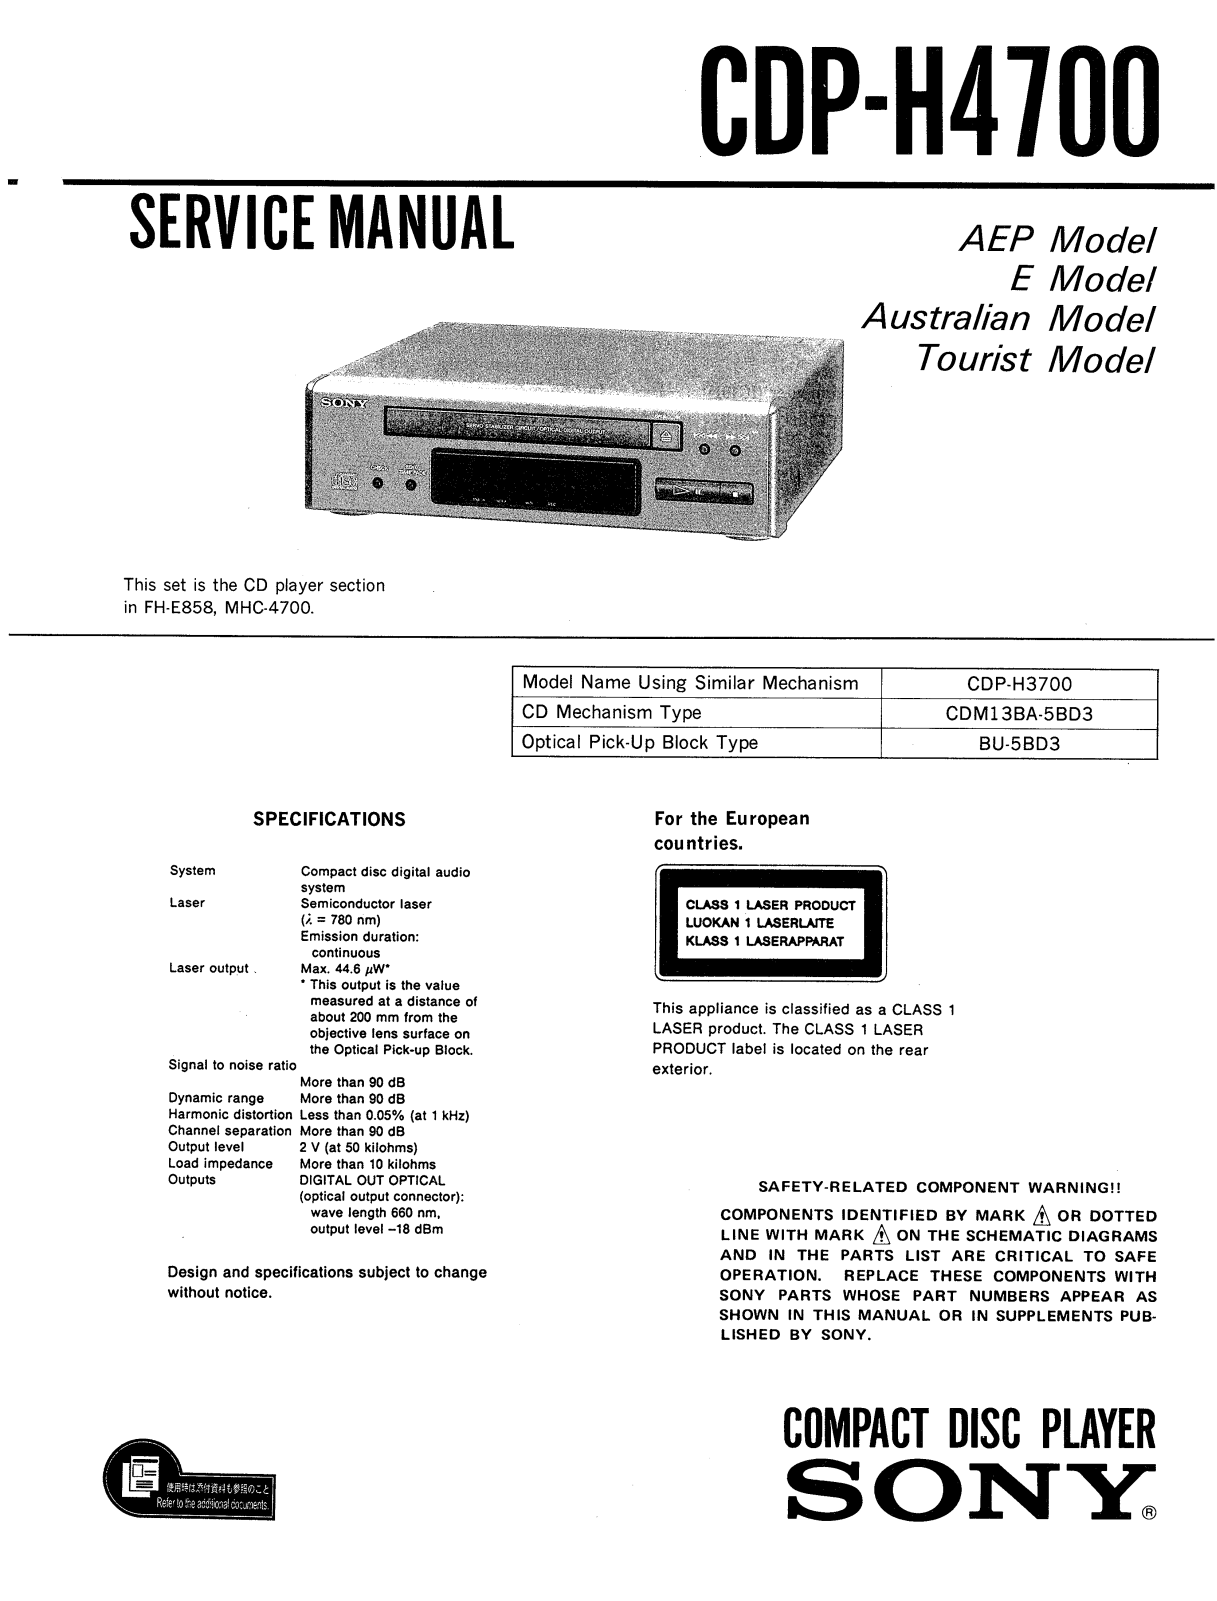 Sony CDPH-4700 Service manual